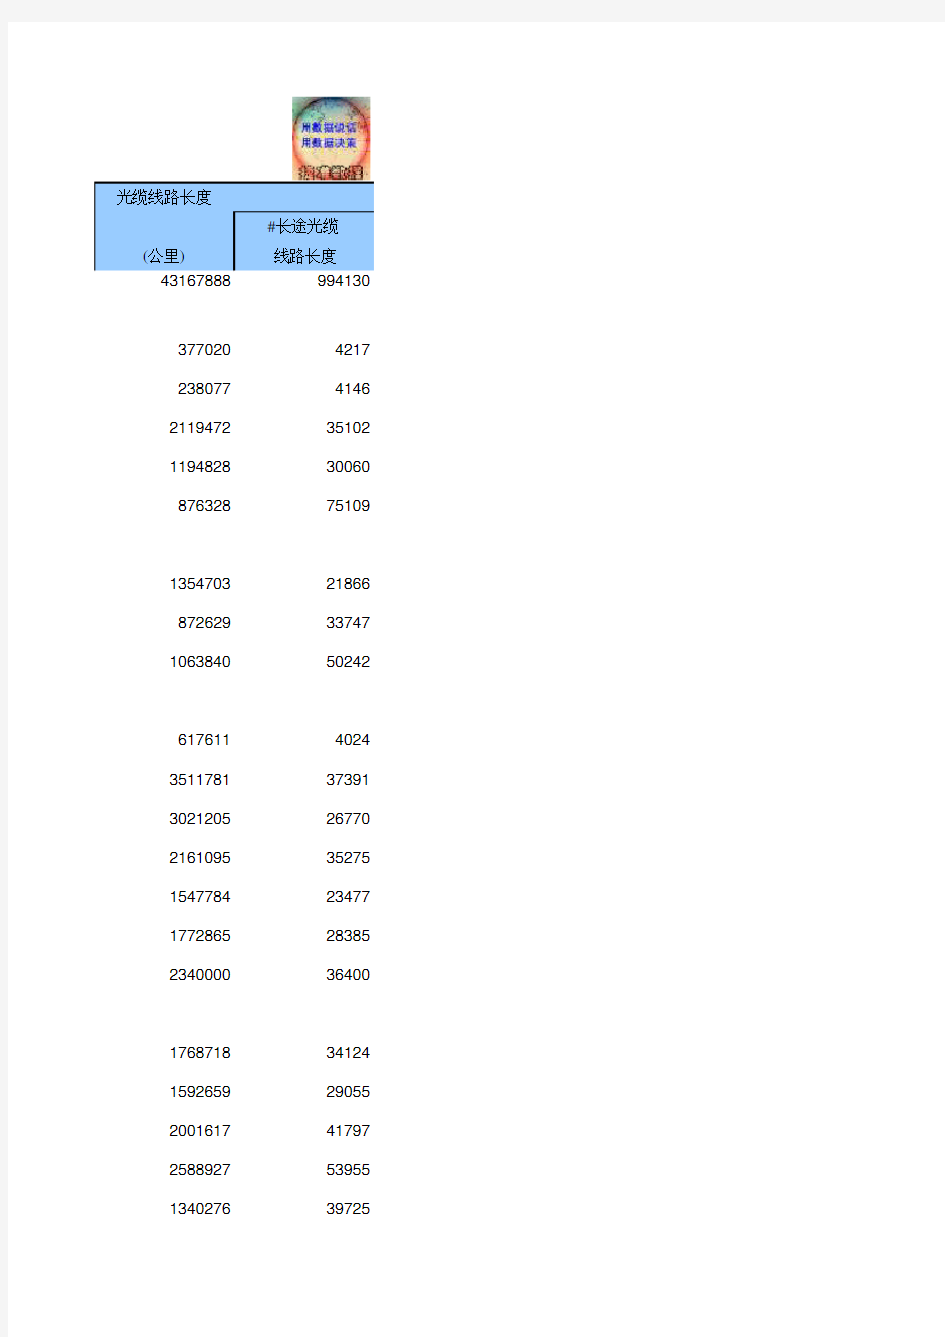 16-34 中国统计年鉴数据处理：电信主要通信能力(全国与各省级指标,便于2011-2018多年数据分析对比)